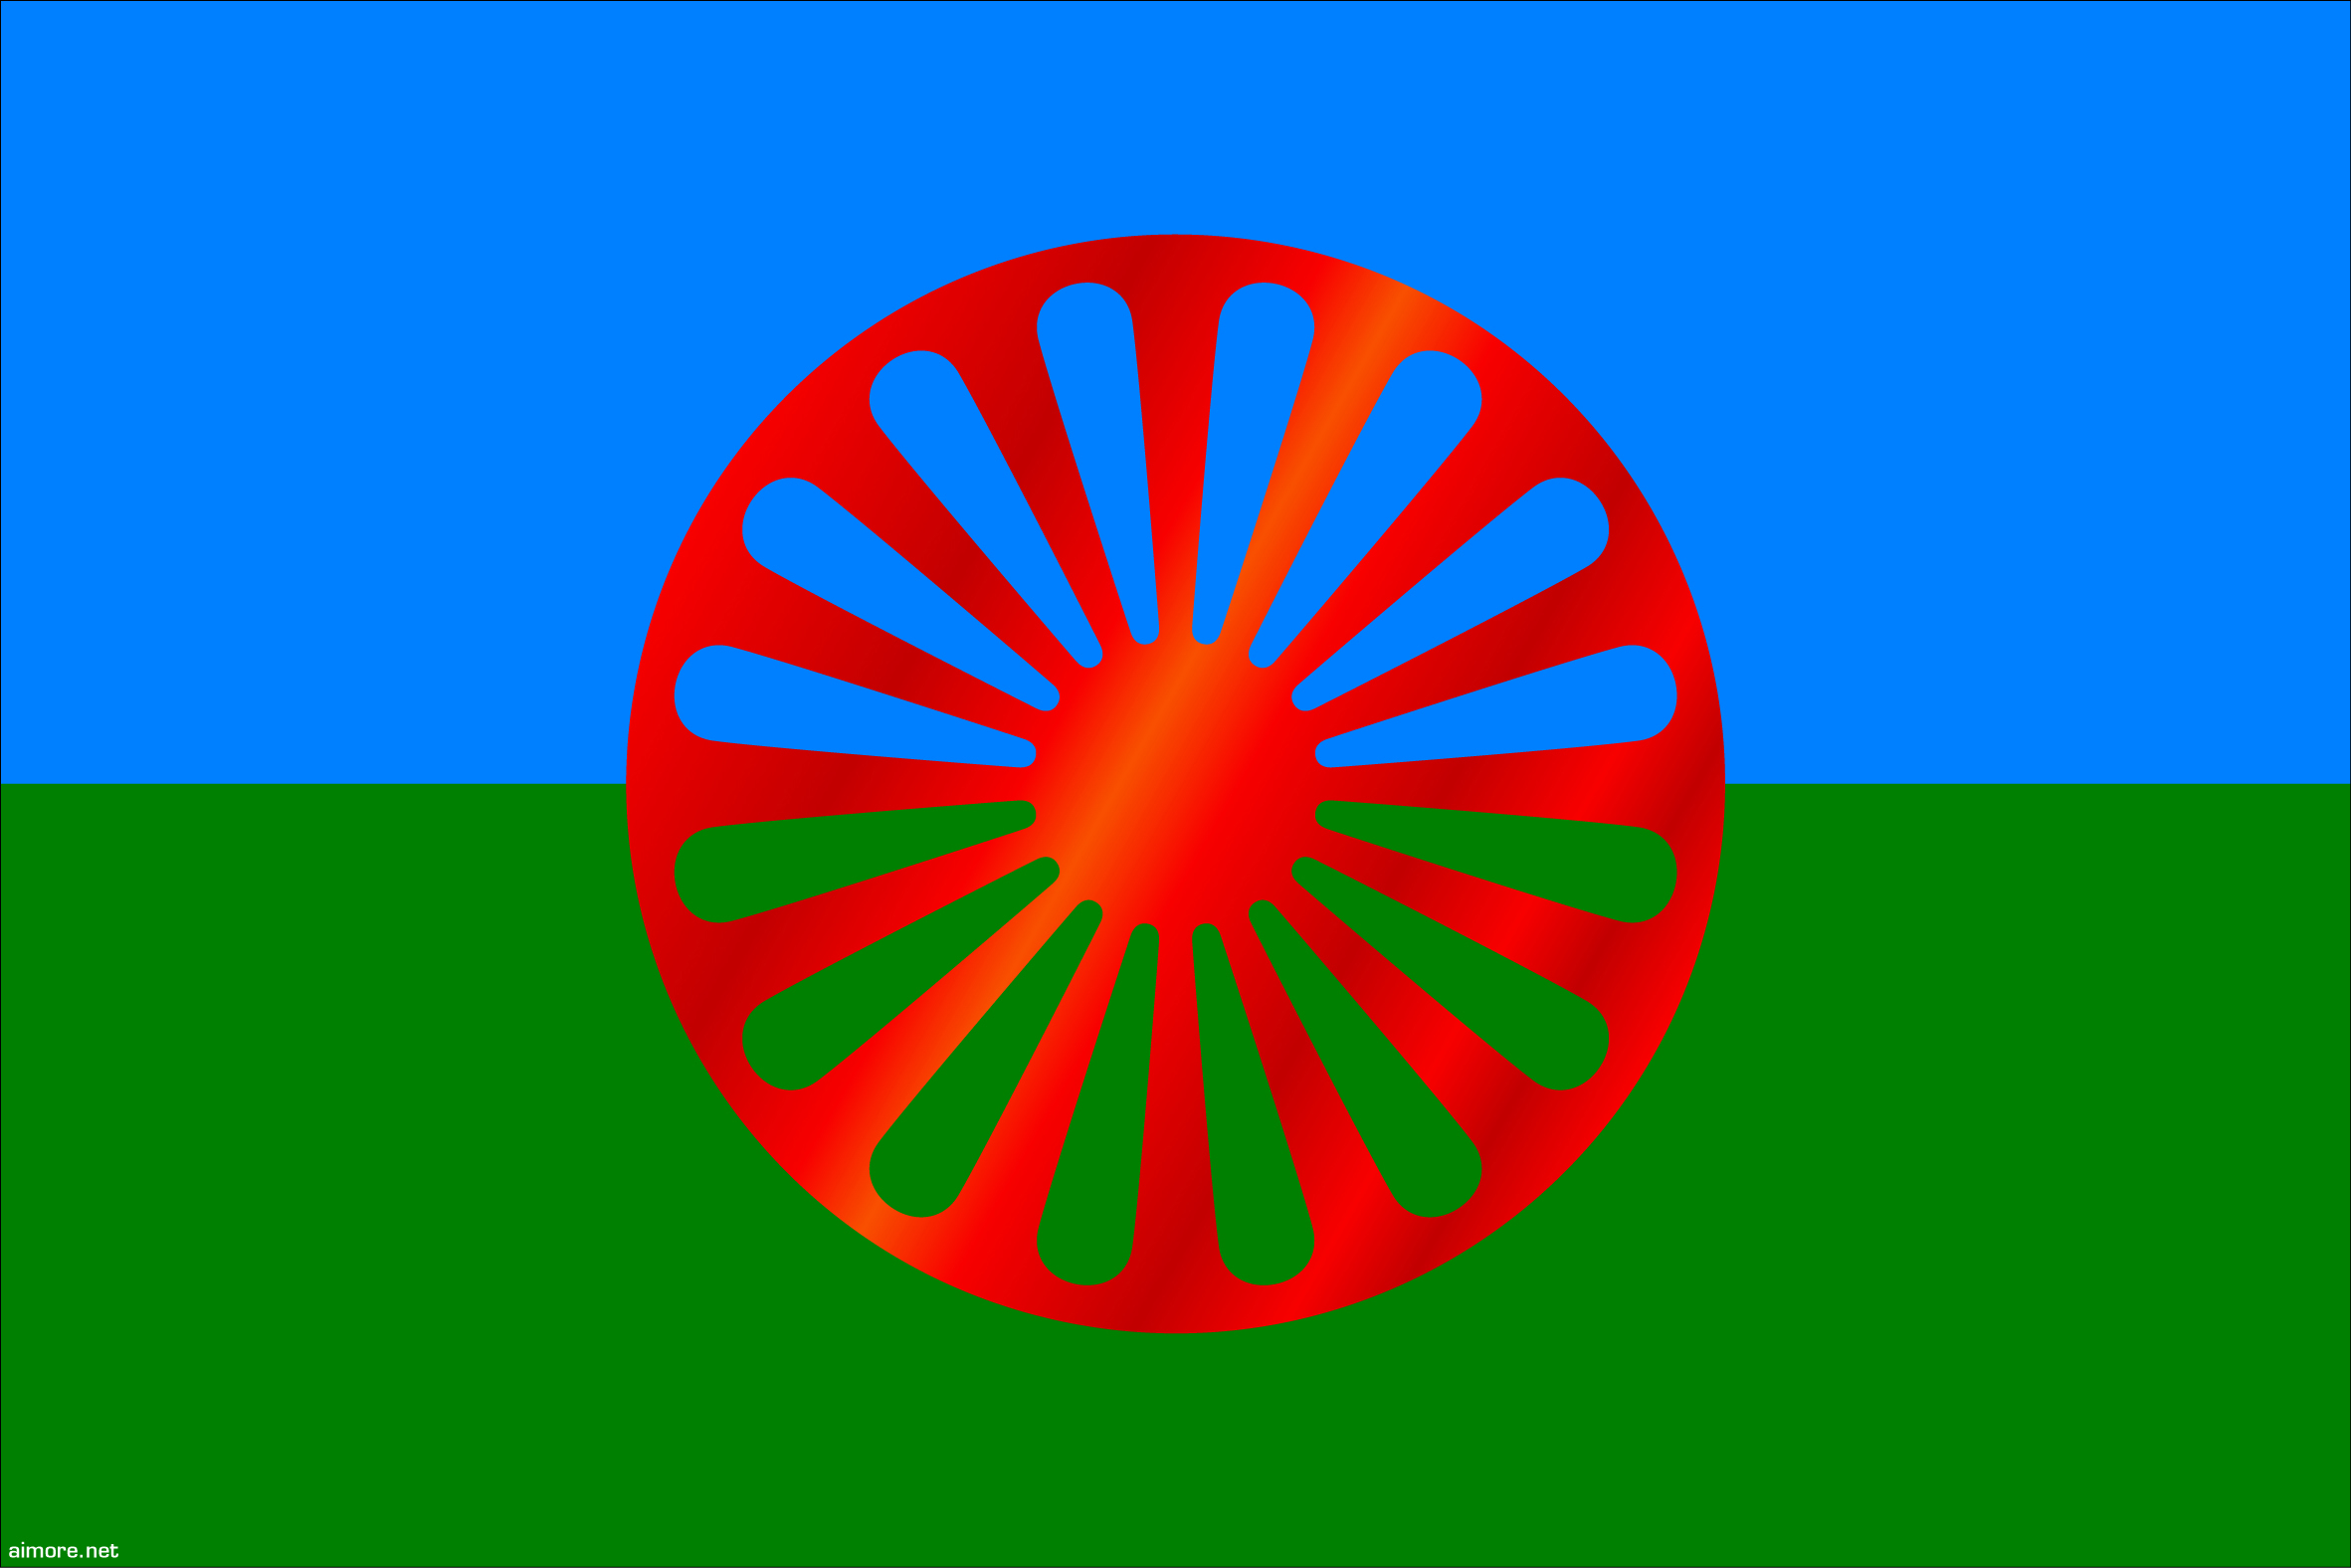 Bandeira Povo Cigano, Romani